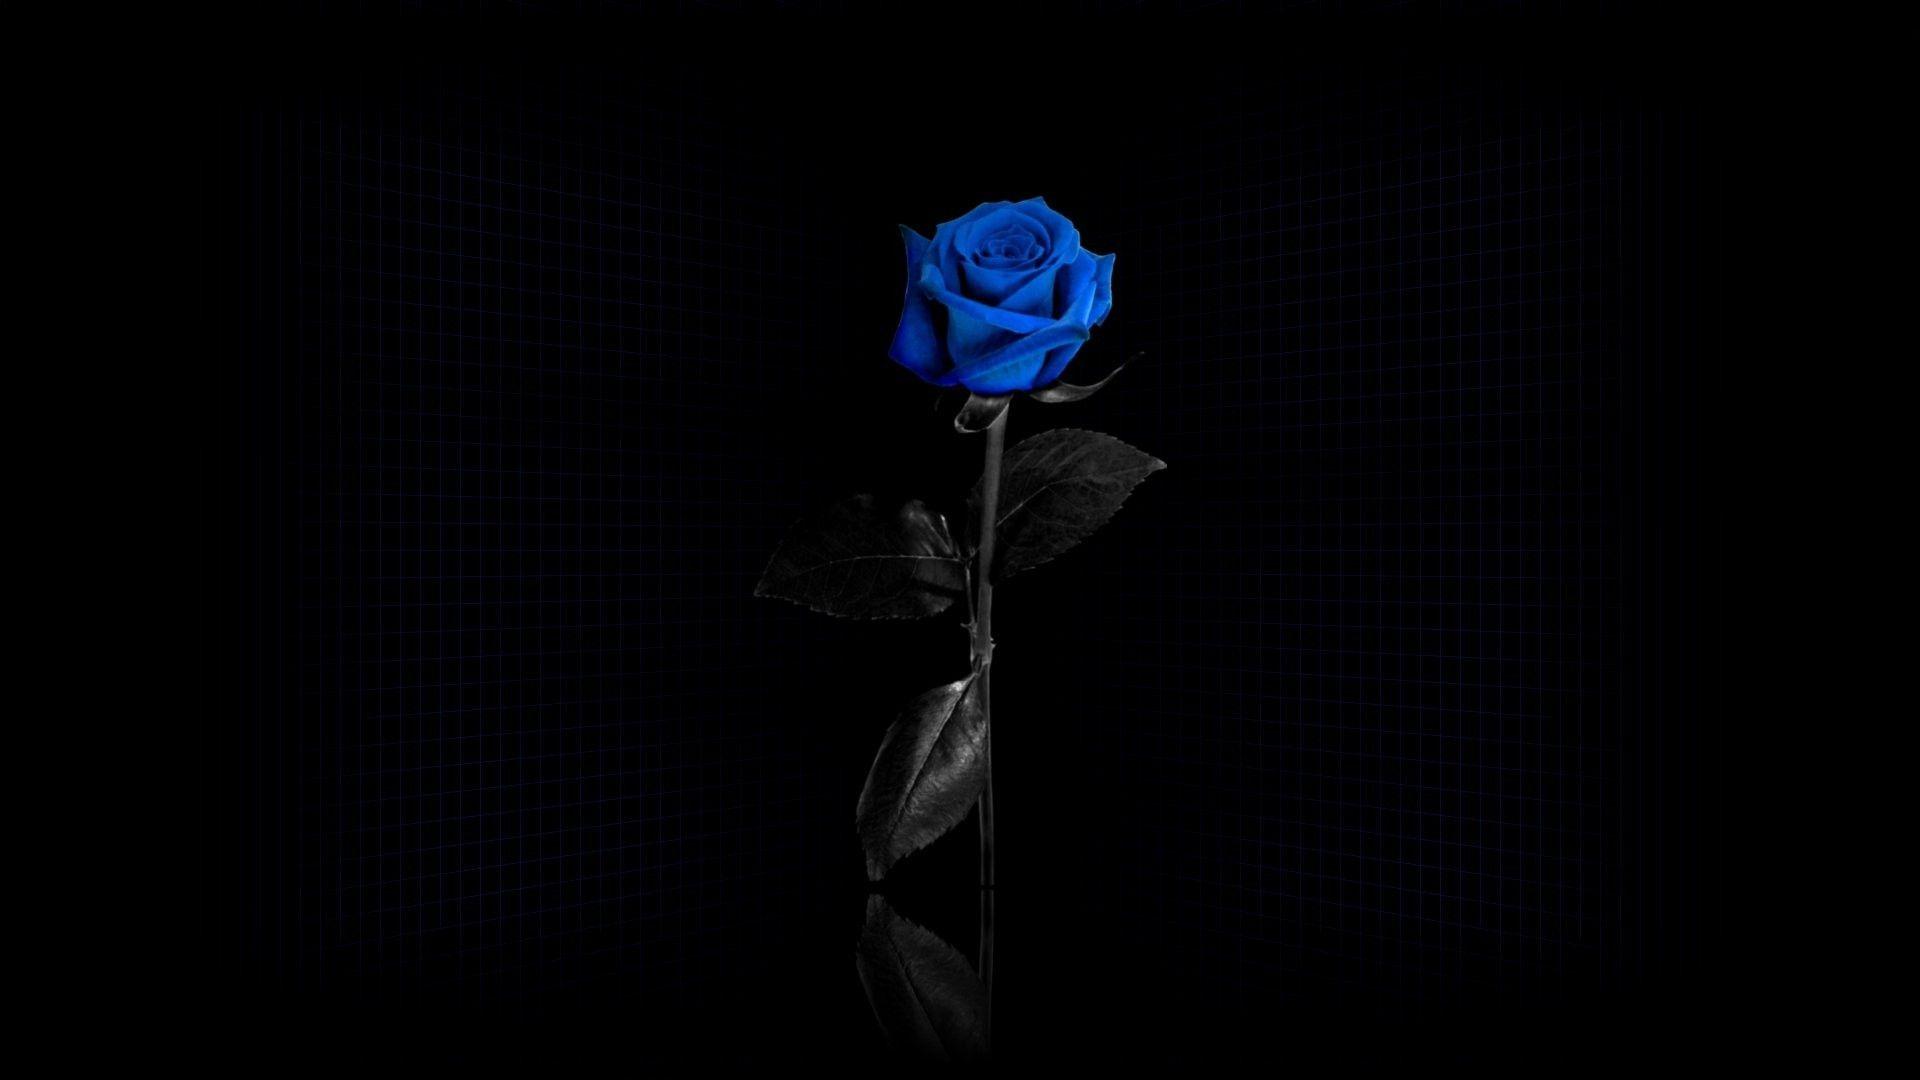 Hình nền hoa hồng đen và xanh đang trở thành xu hướng mới, thu hút sự quan tâm của nhiều người yêu thích thiết kế. Cùng khám phá hình nền hoa hồng đen và xanh ấn tượng đầy sức cuốn hút và độc đáo, tạo nên vẻ đẹp rất riêng mà bạn sẽ không thể chối từ.